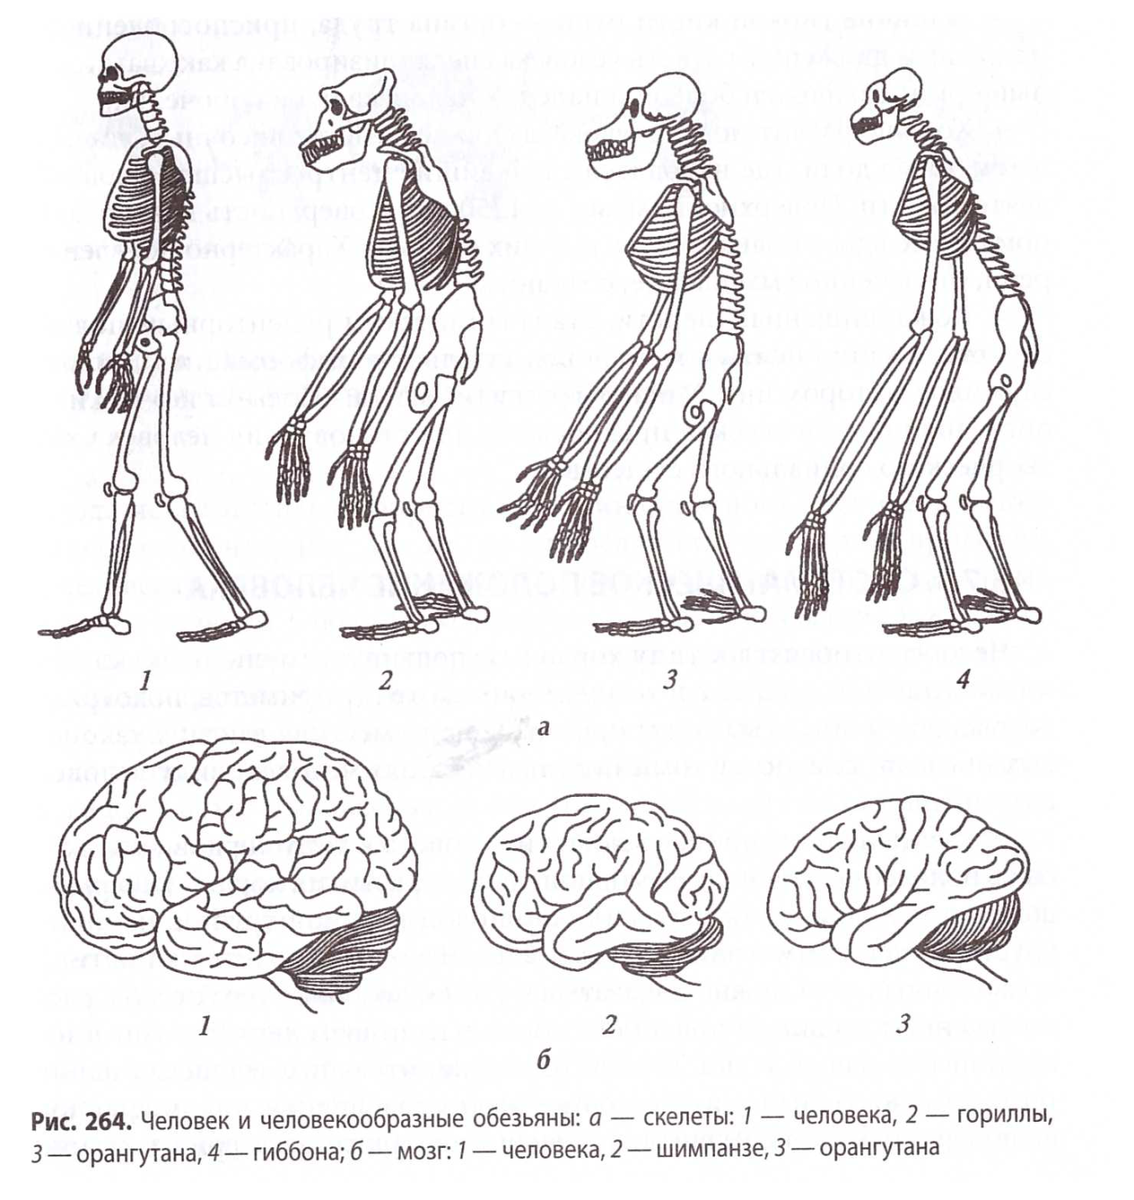 Сравнение скелета человека и человекообразной обезьяны. Строение мозга человекообразной обезьяны. Скелет человека и человекообразных обезьян. Строение скелета человека и человекообразных обезьян.